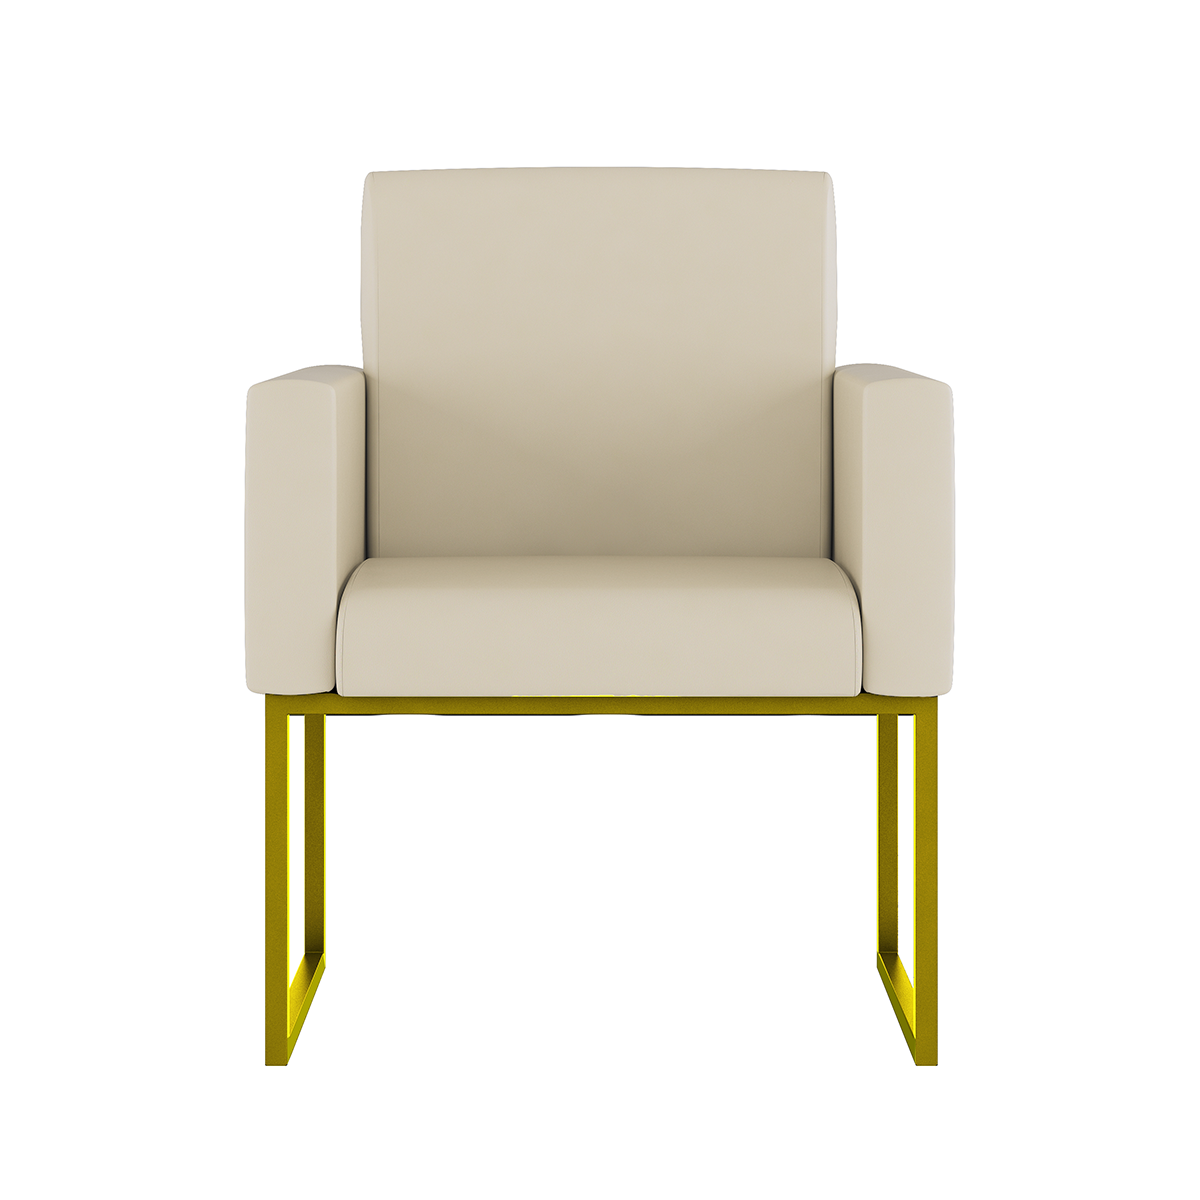 Poltrona Cadeira Decorativa Recepção Base de Ferro Dourada:courino Bege - 2